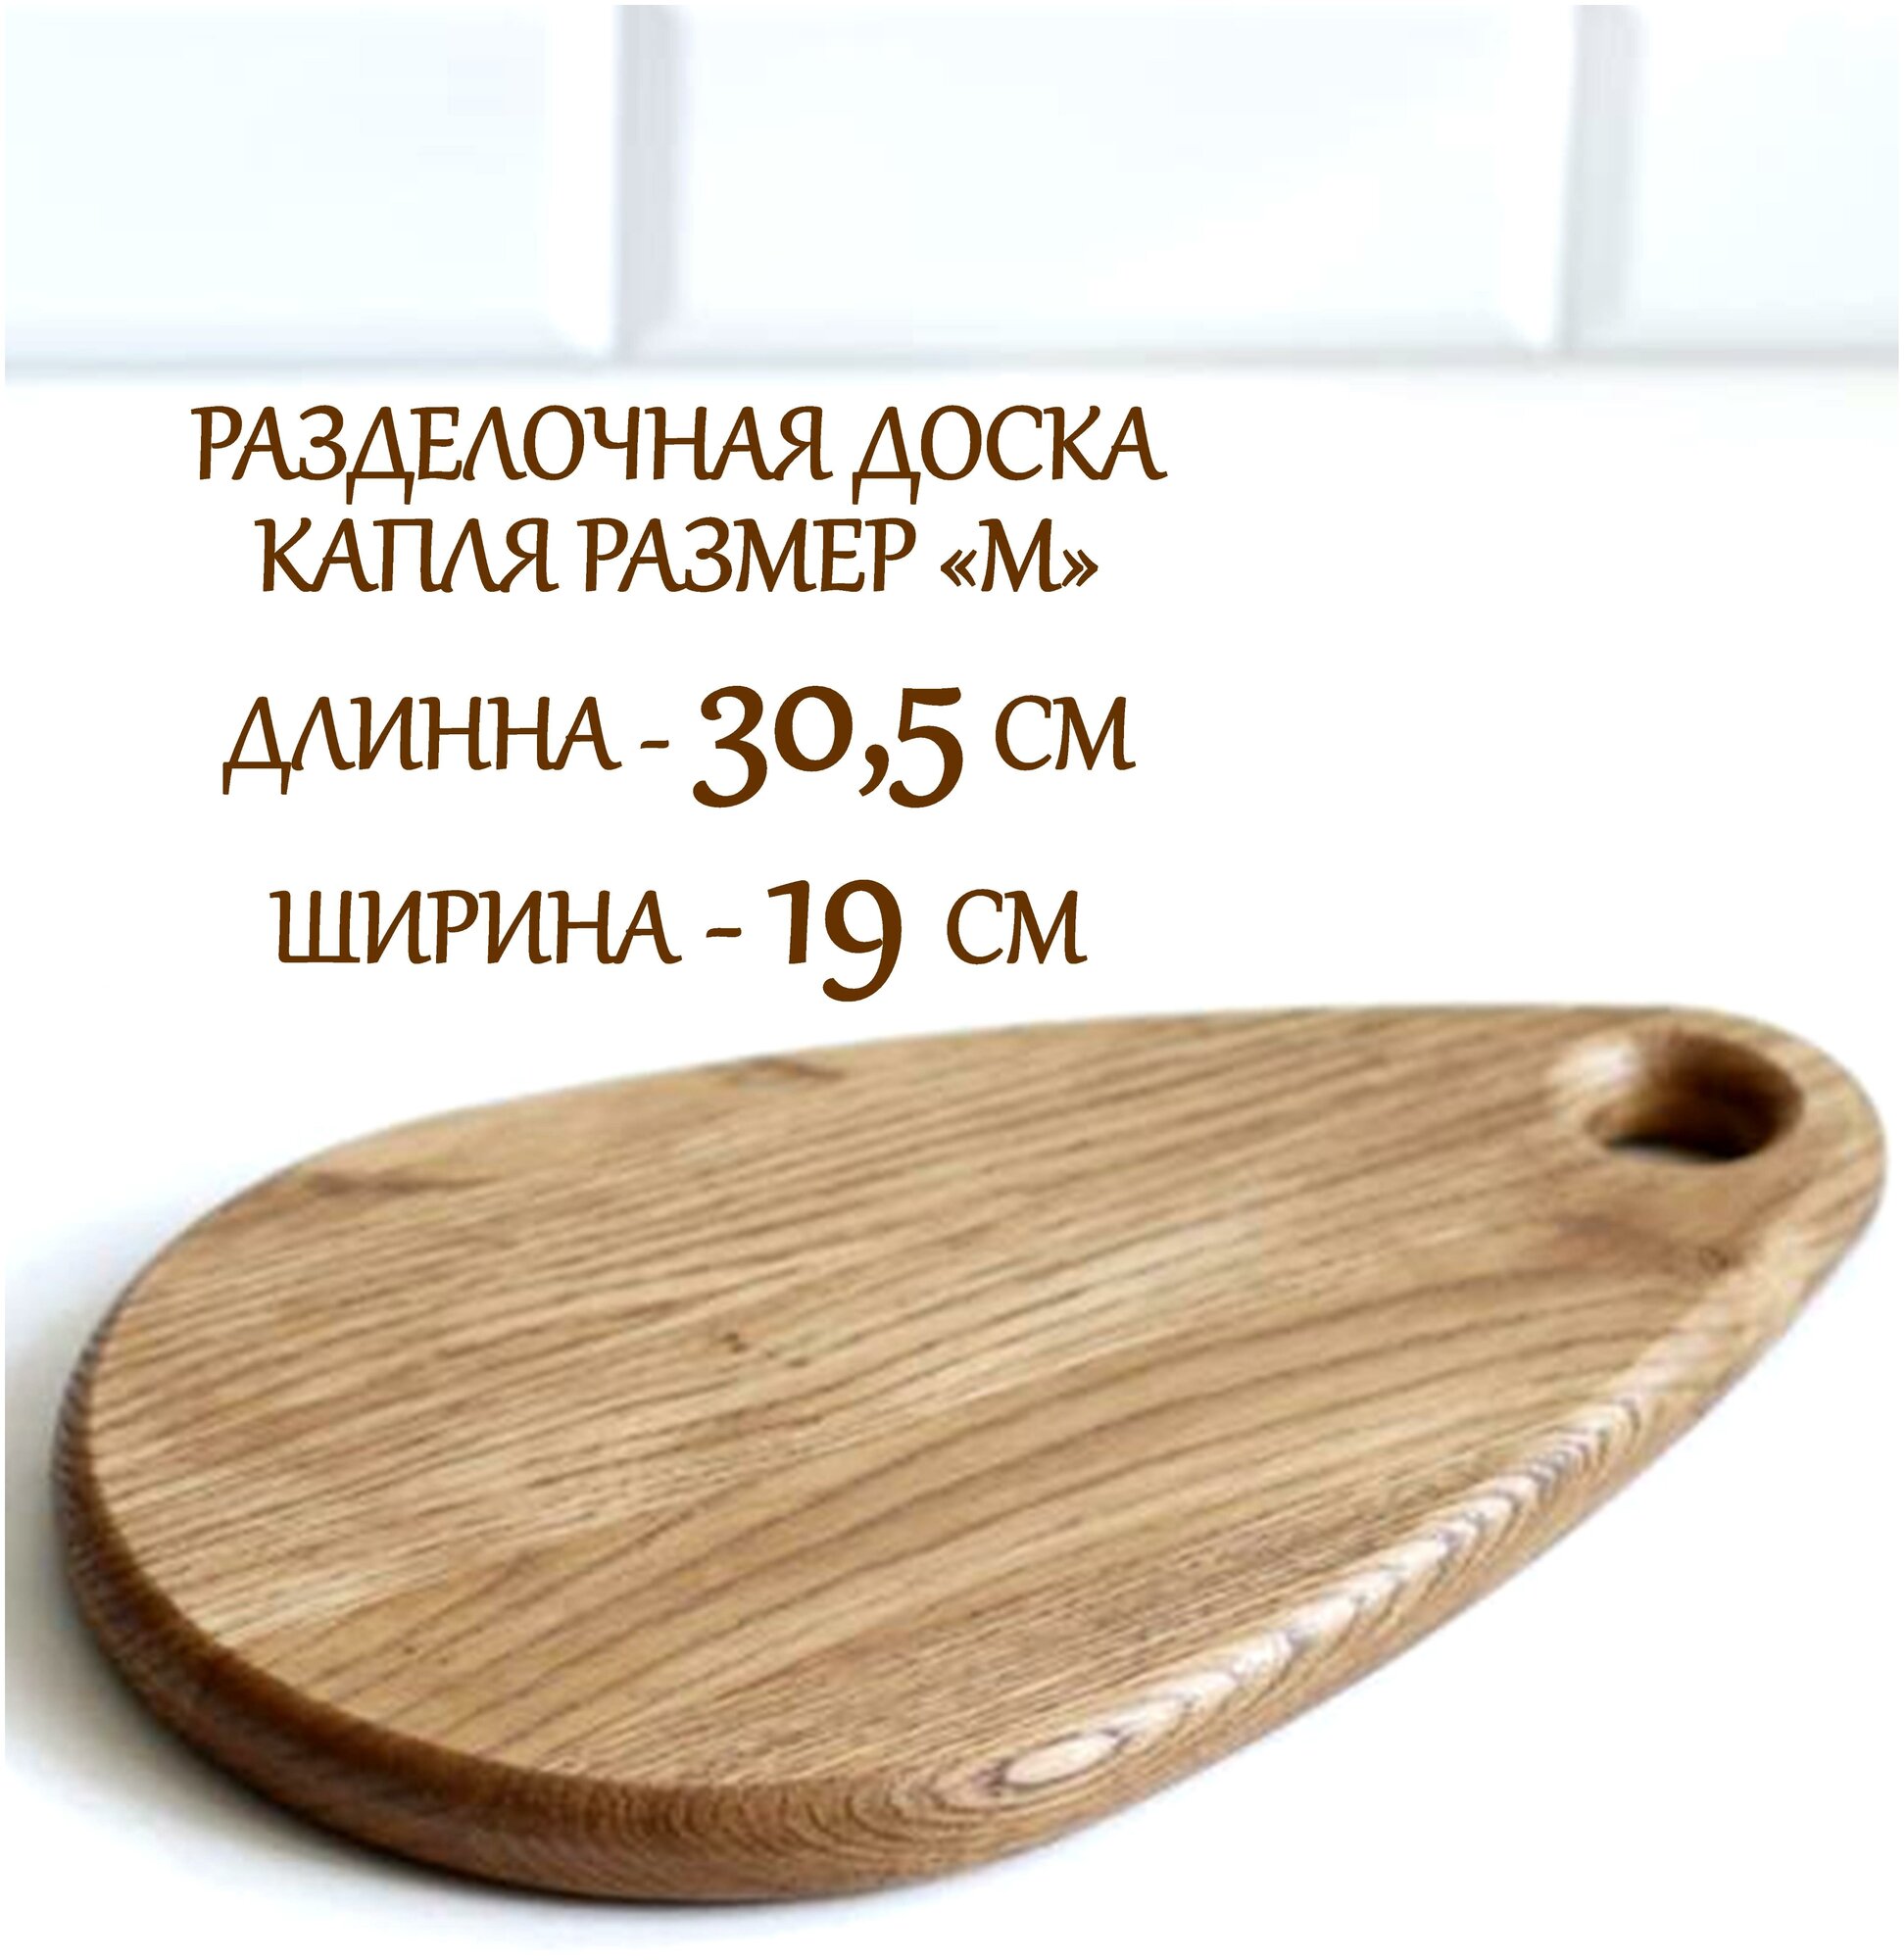 Разделочная доска "Капля" размер "М" деревянная из натурального дуба от Wood_store36 - фотография № 9